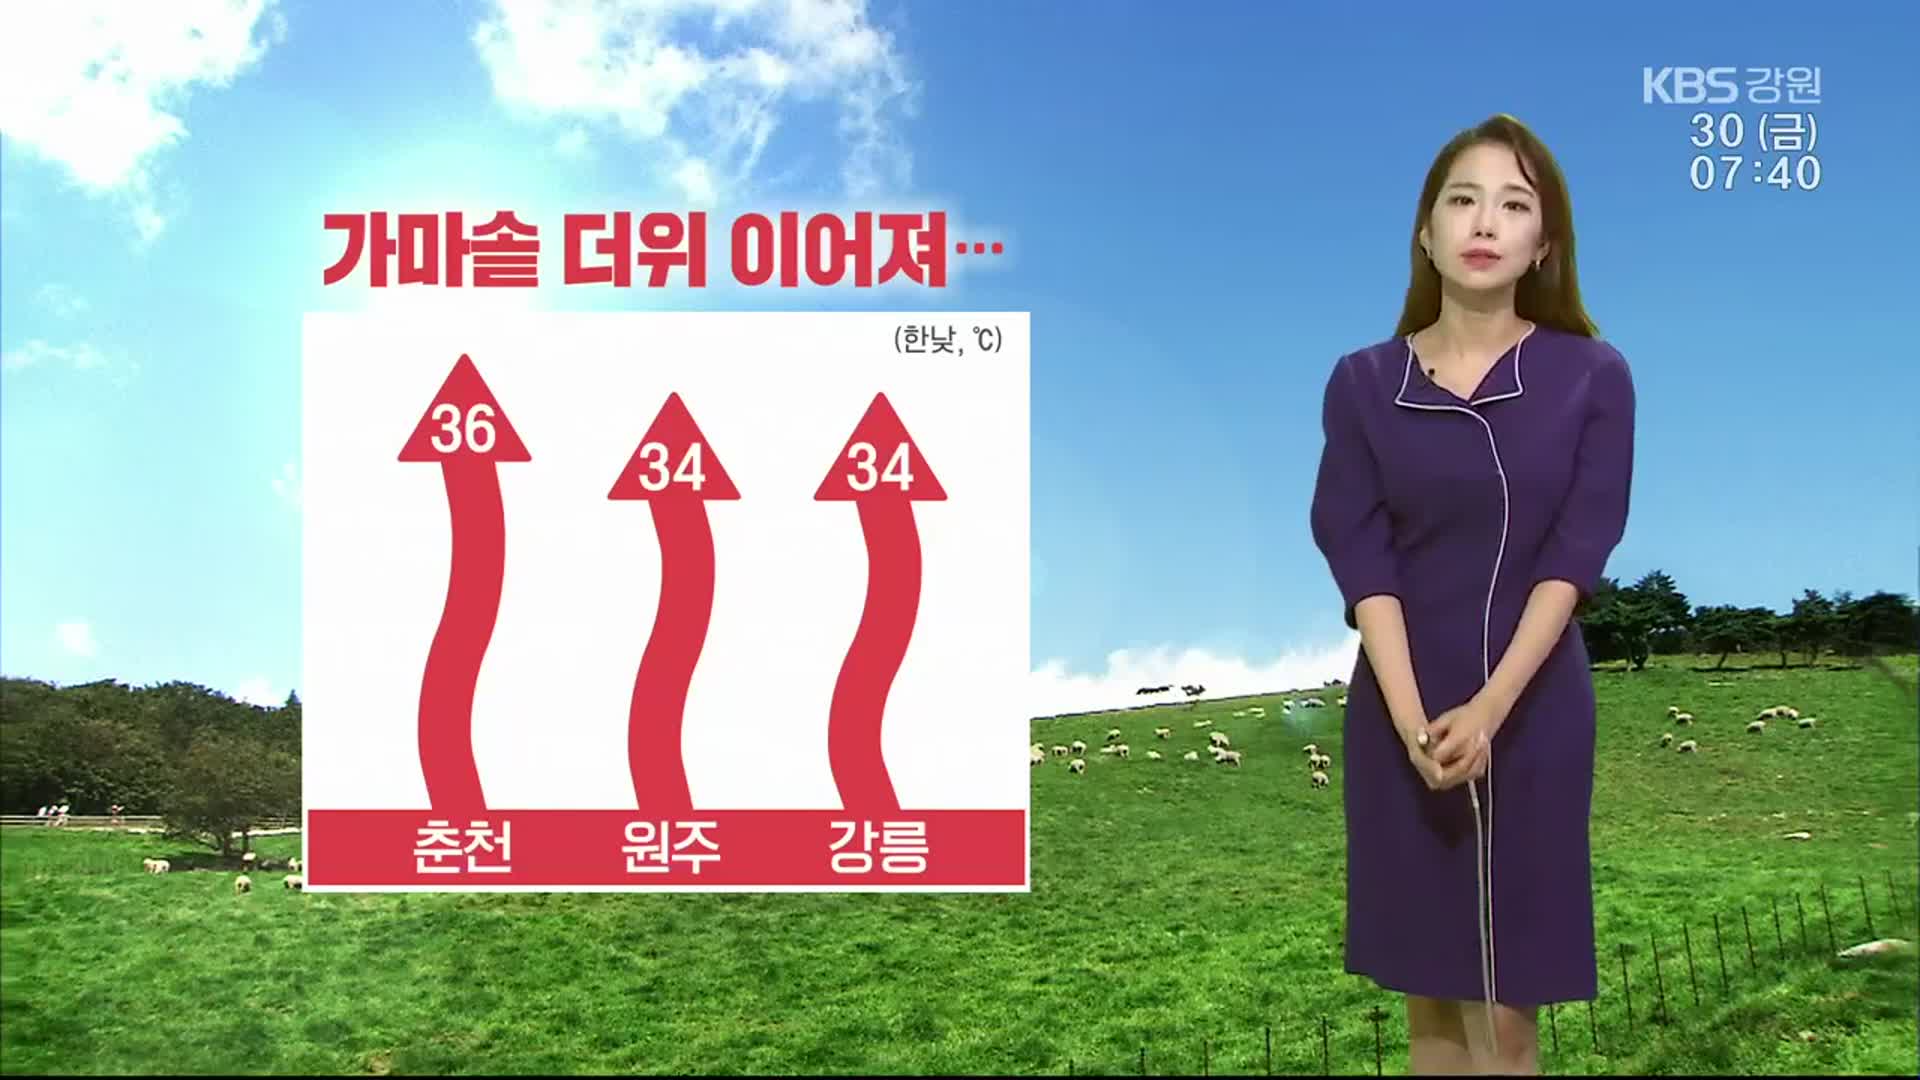 [날씨] 강원 가마솥 더위…한낮 36도 온열질환 유의